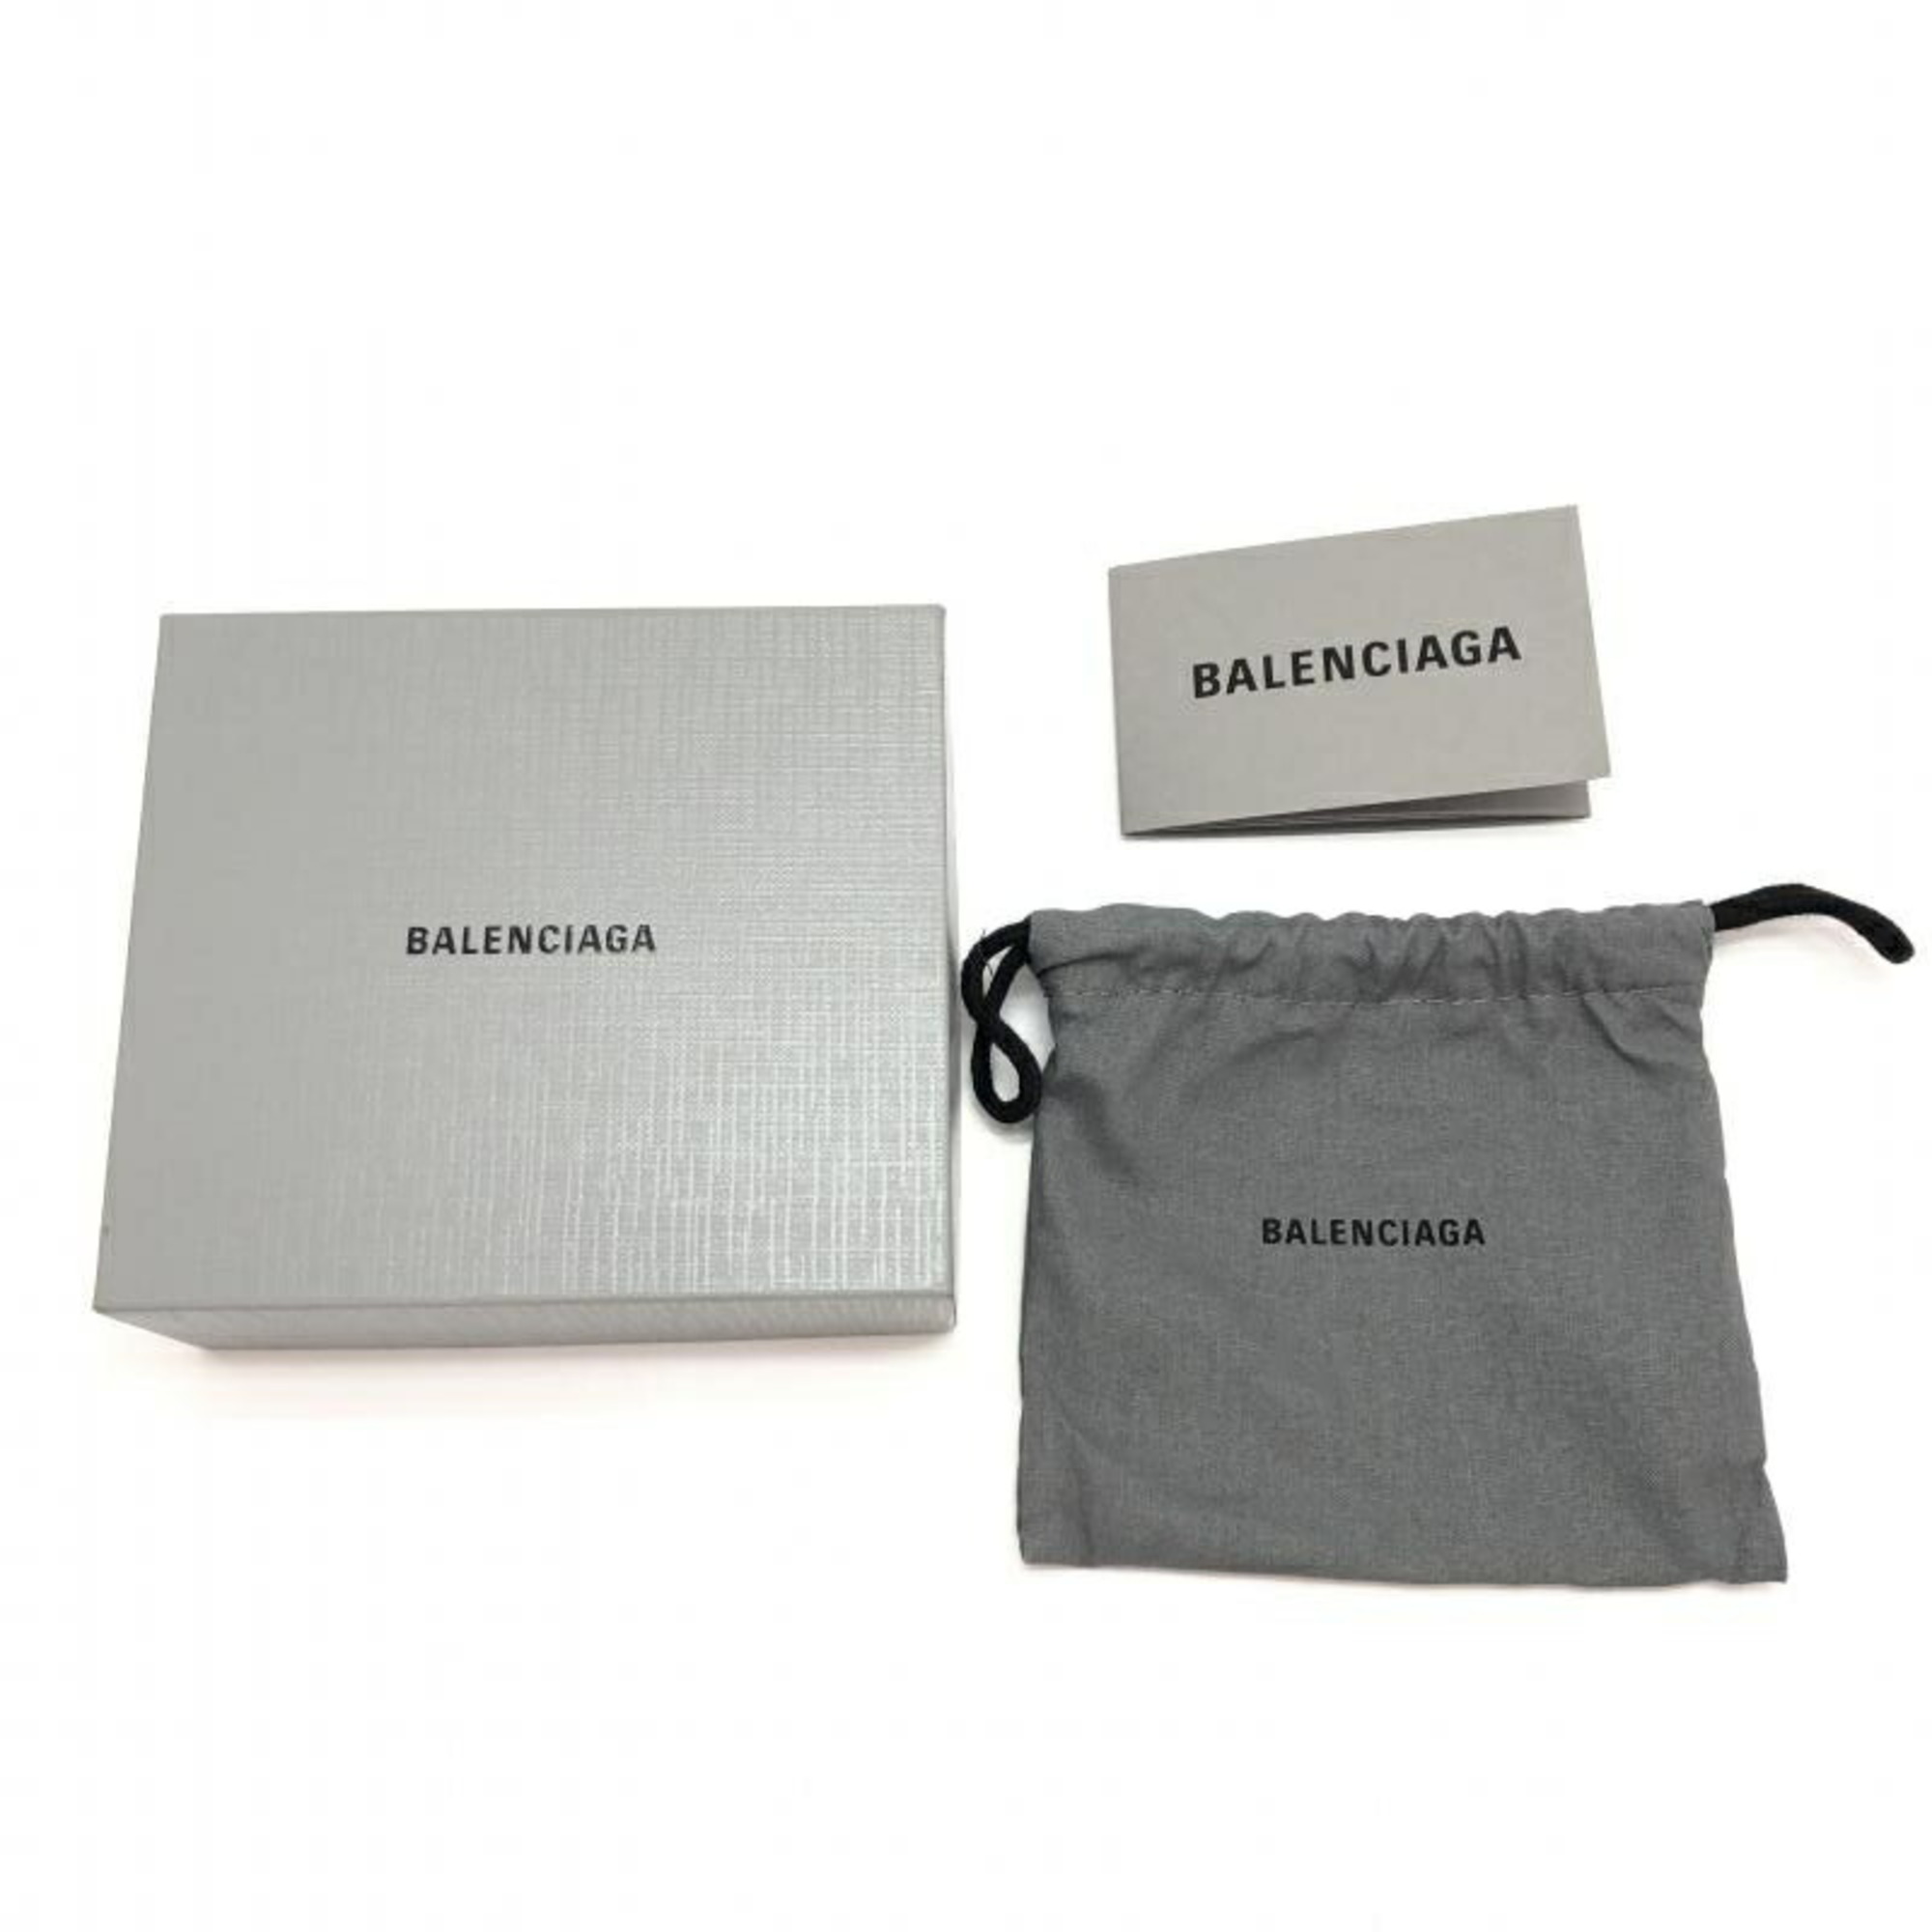 BALENCIAGA Tri-fold Wallet Leather 655622 1090 R 568148 Black